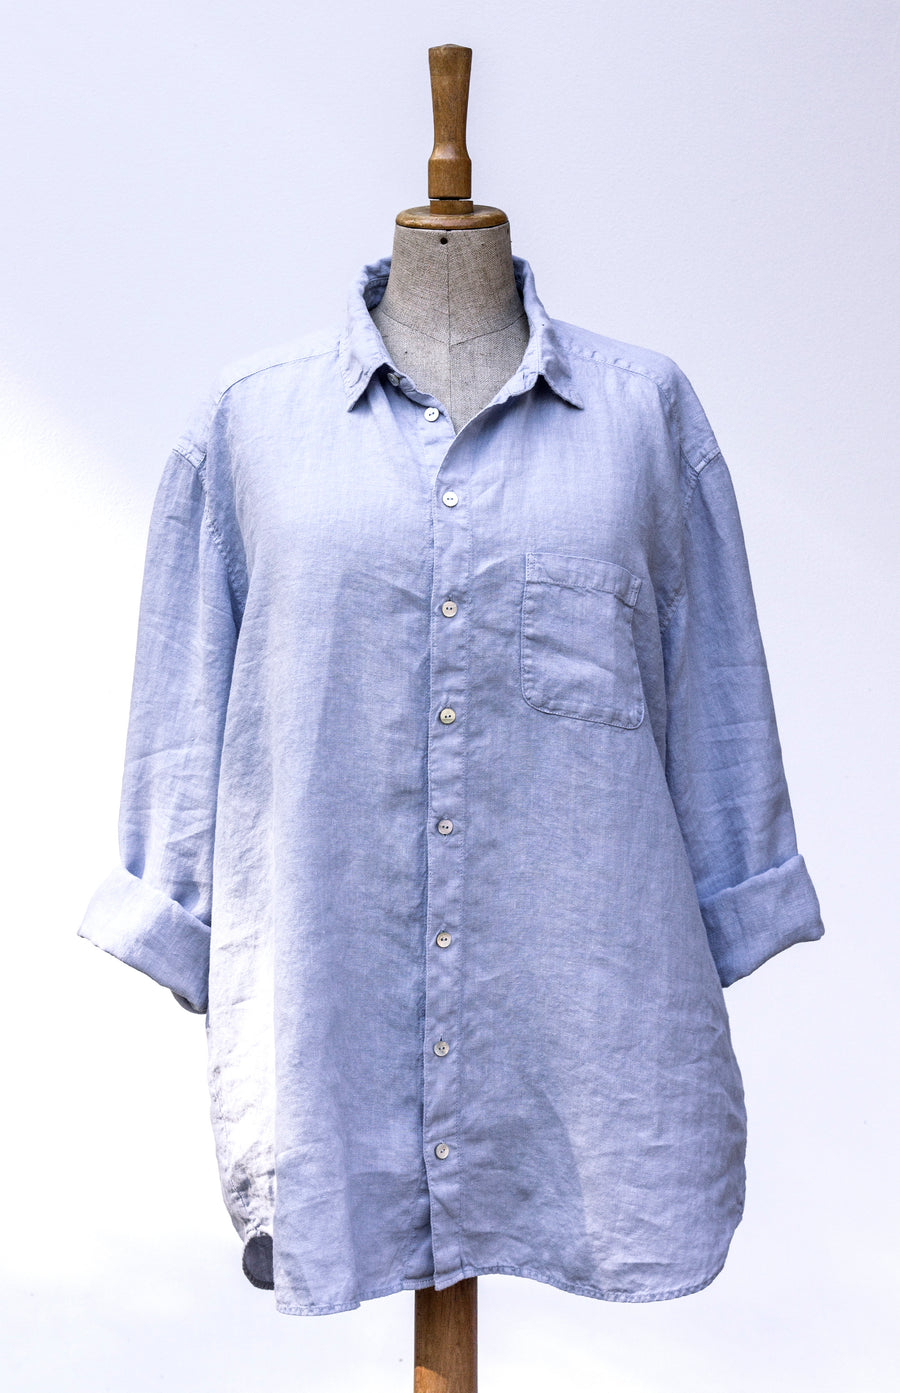 Extra soft unisex linen shirt Pantone Kentucky Blue